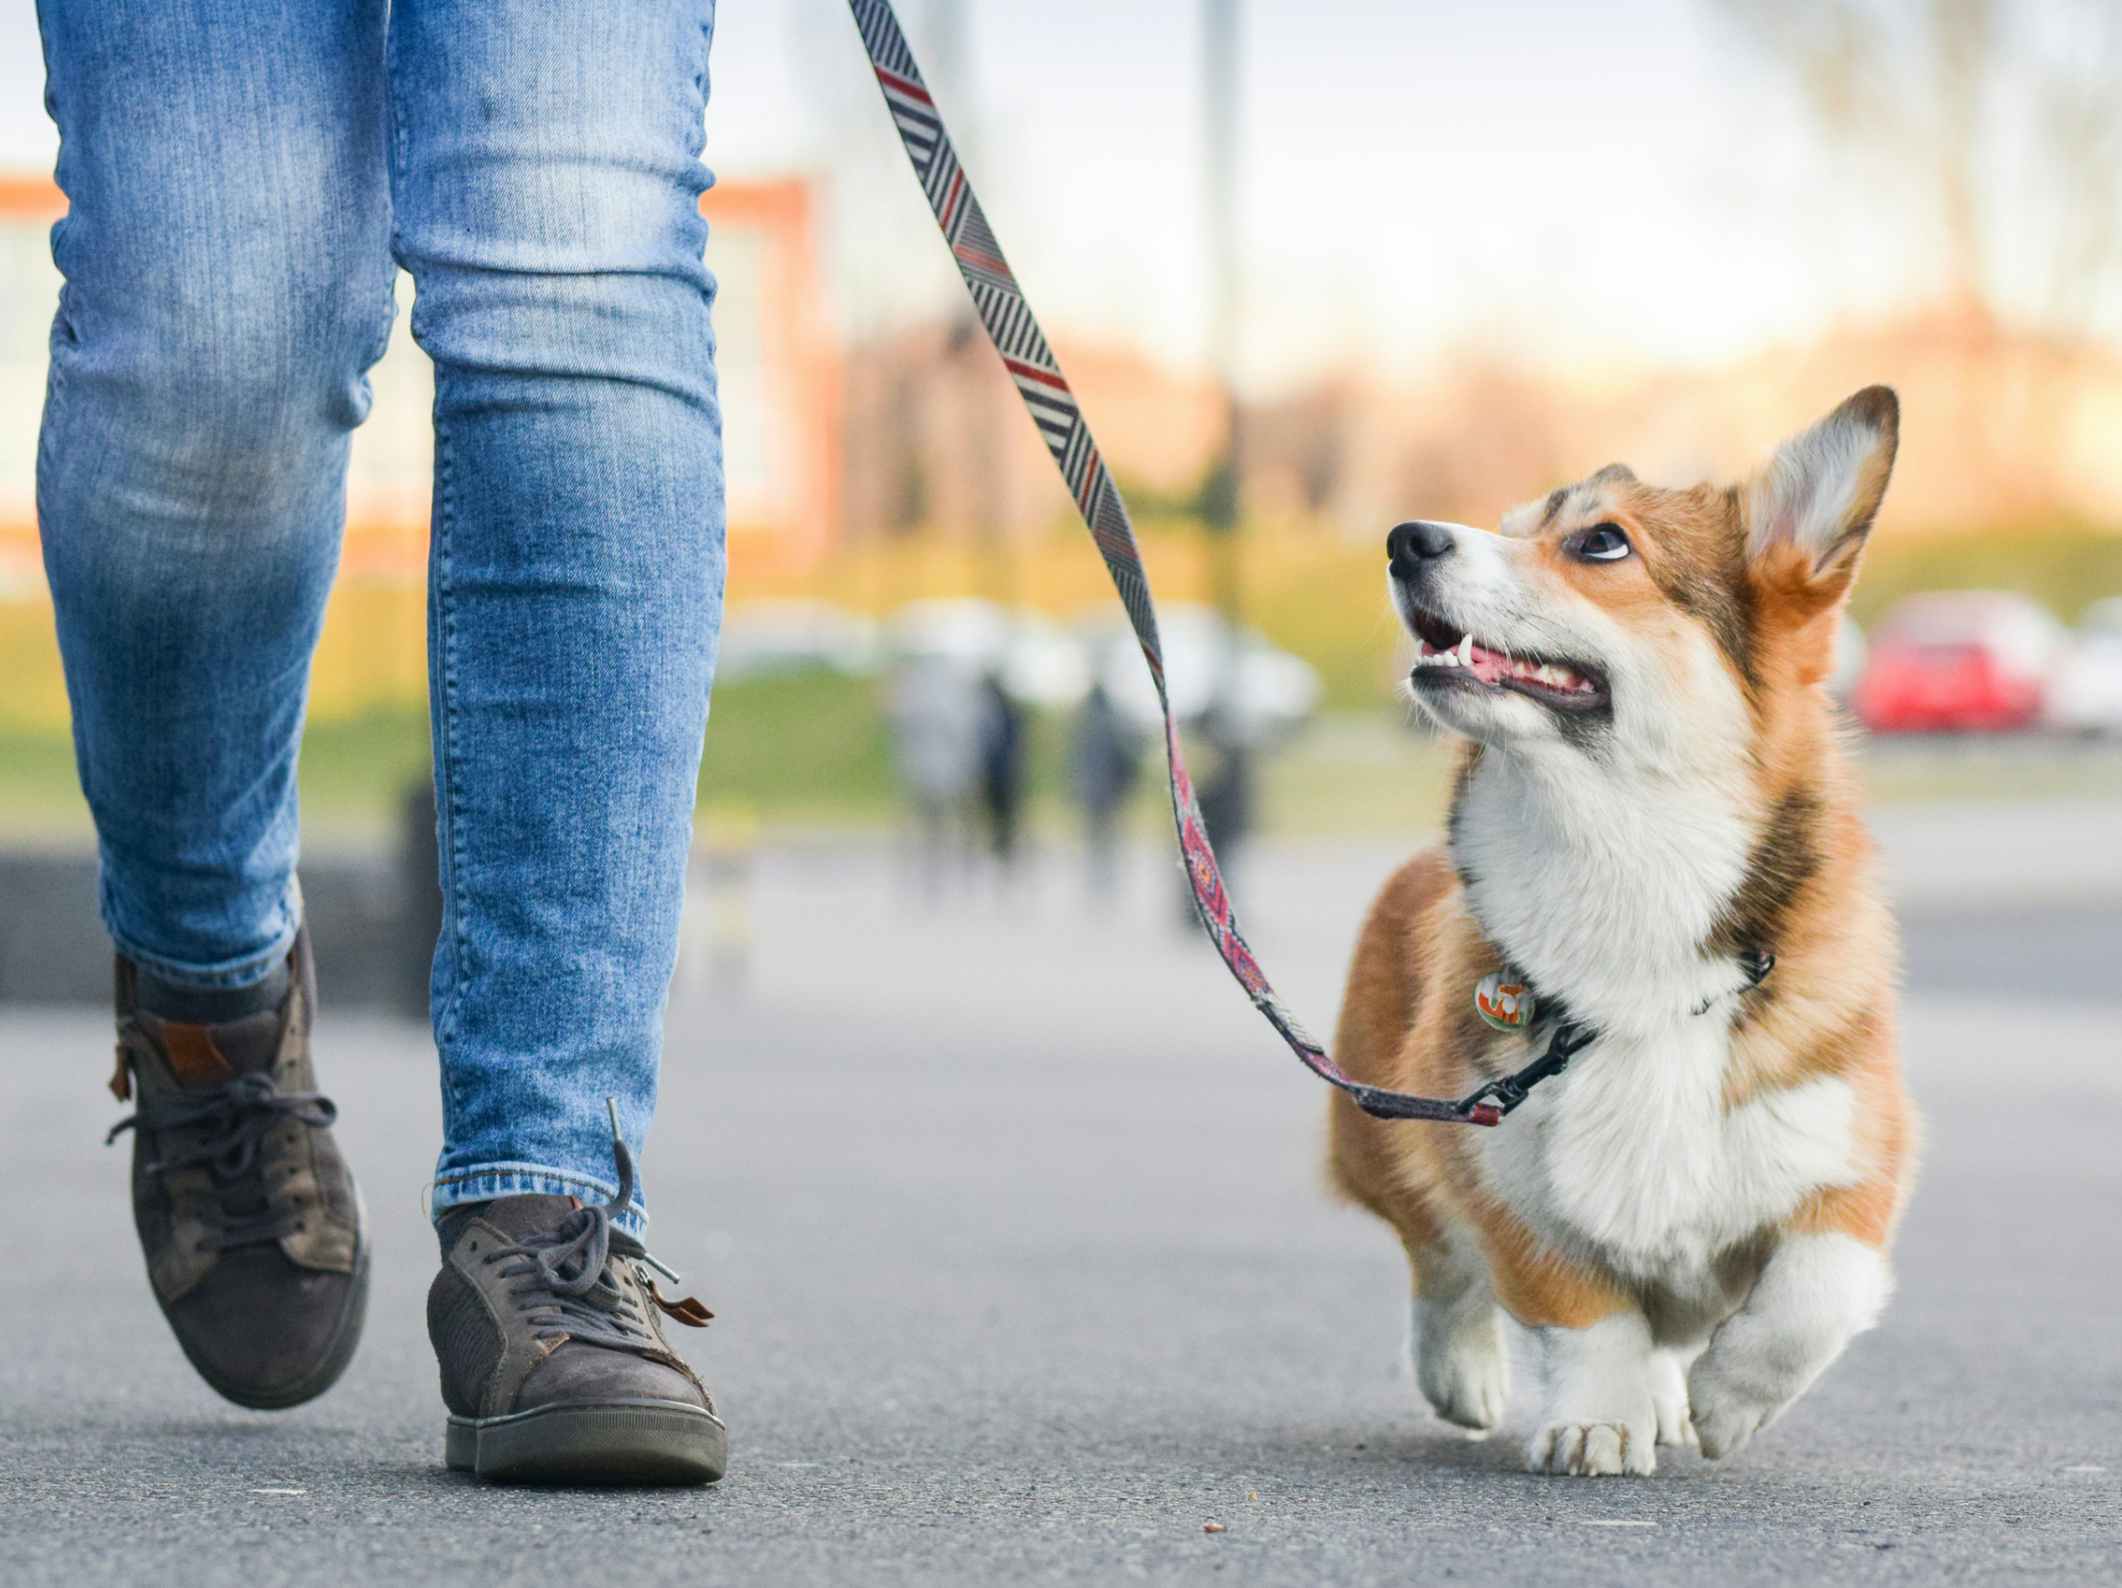 A person walking a cute dog